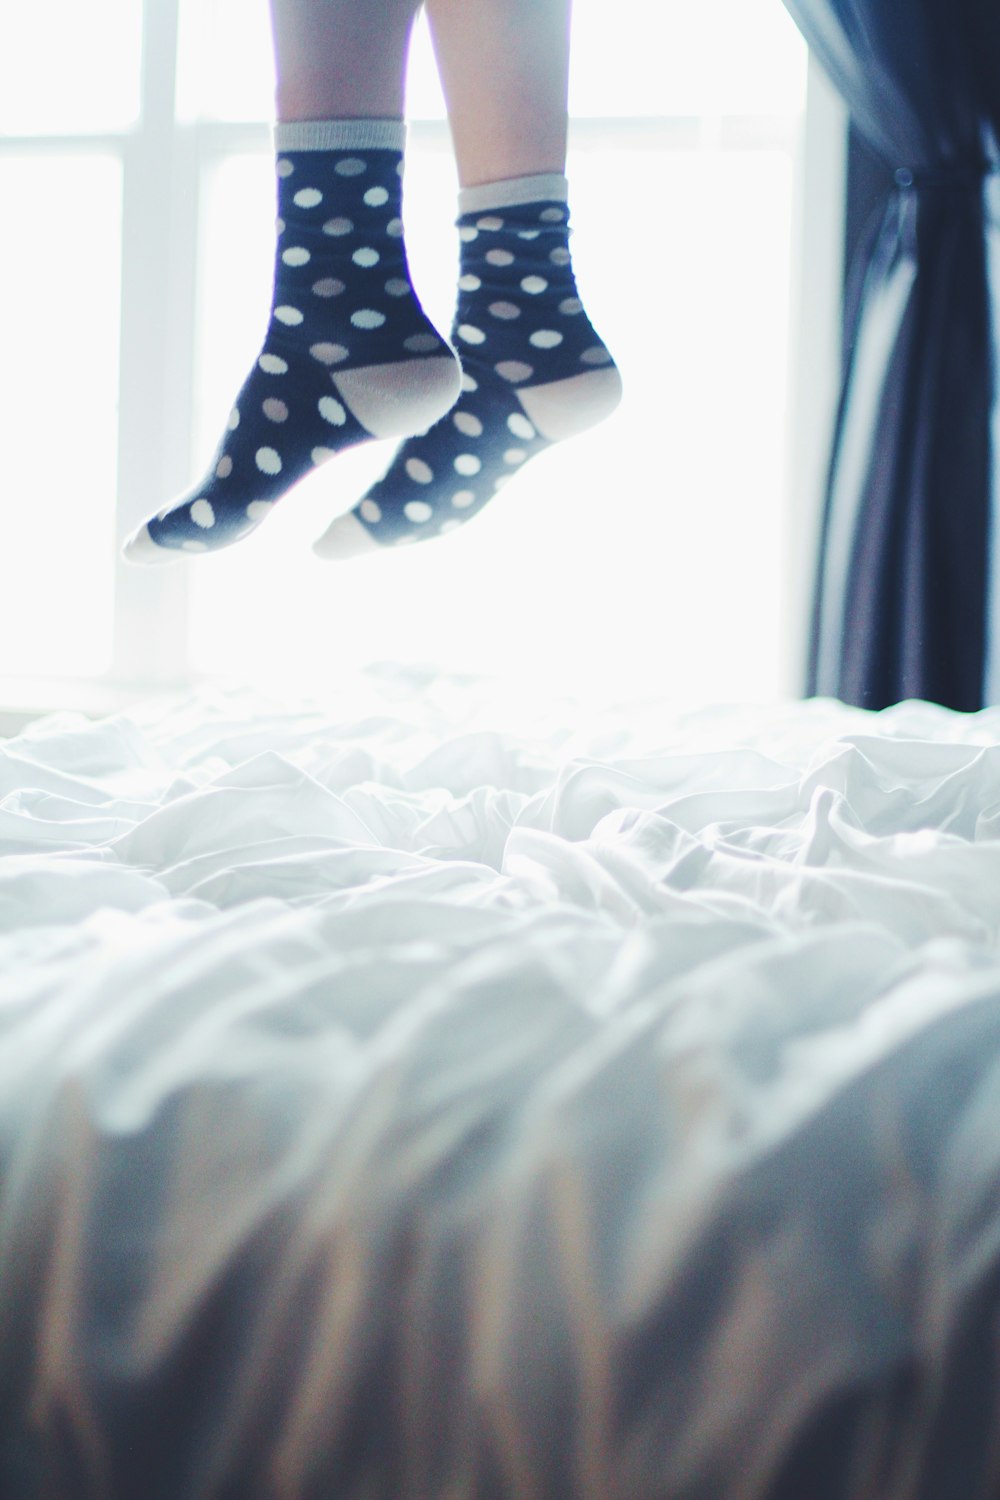 pair of white-and-black polka-dot socks